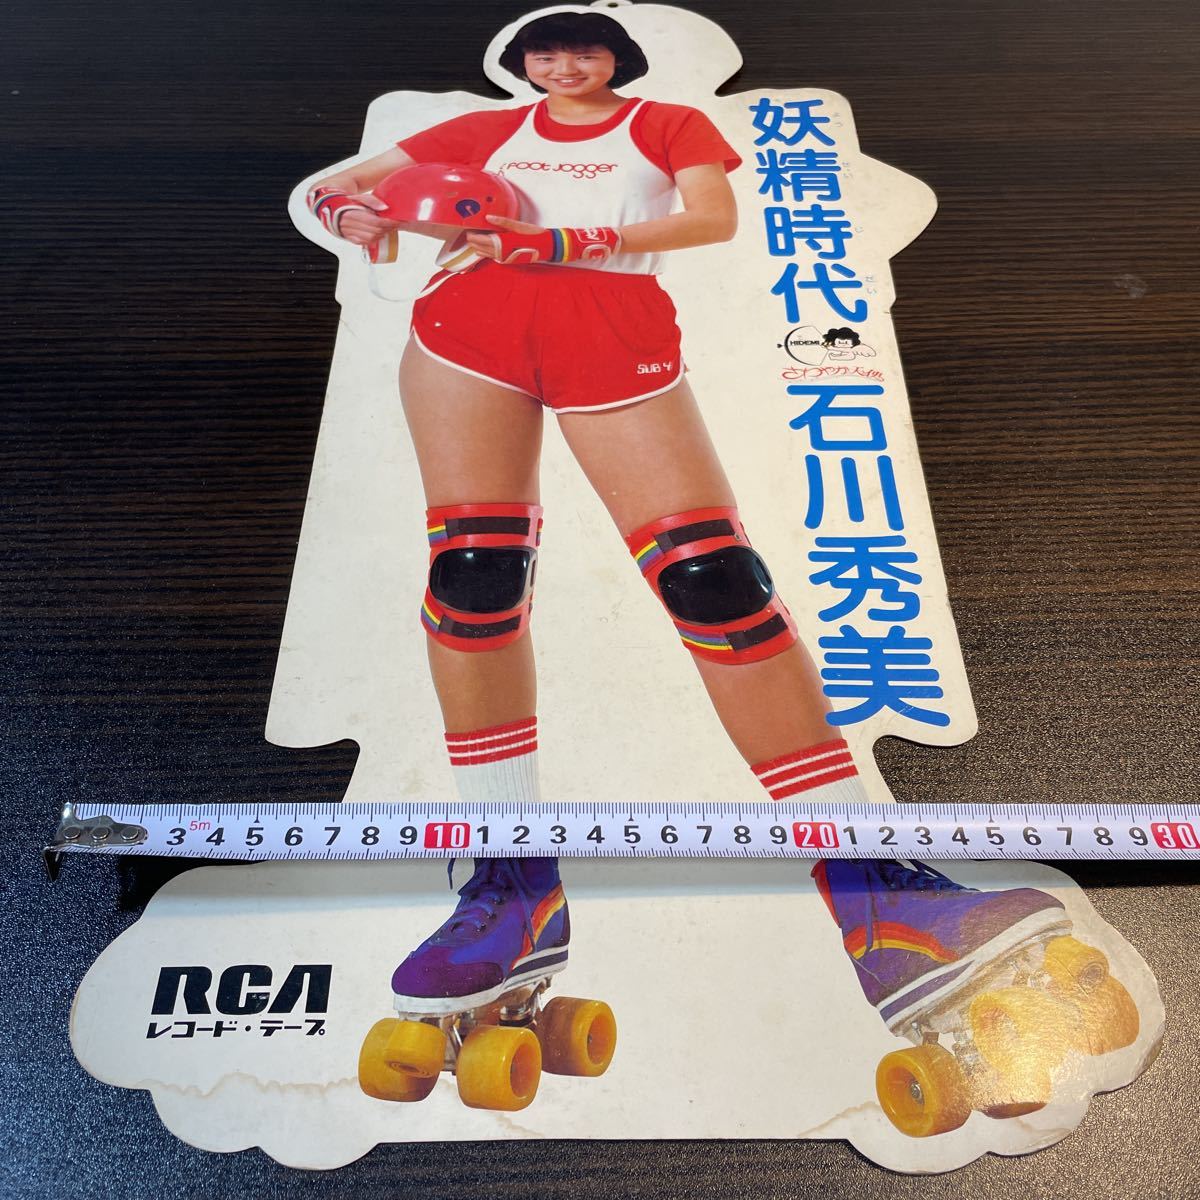  Ishikawa Hidemi подлинная вещь для продвижения товара реклама pop 80 годы идол кассетная лента запись .. времена Showa Retro 